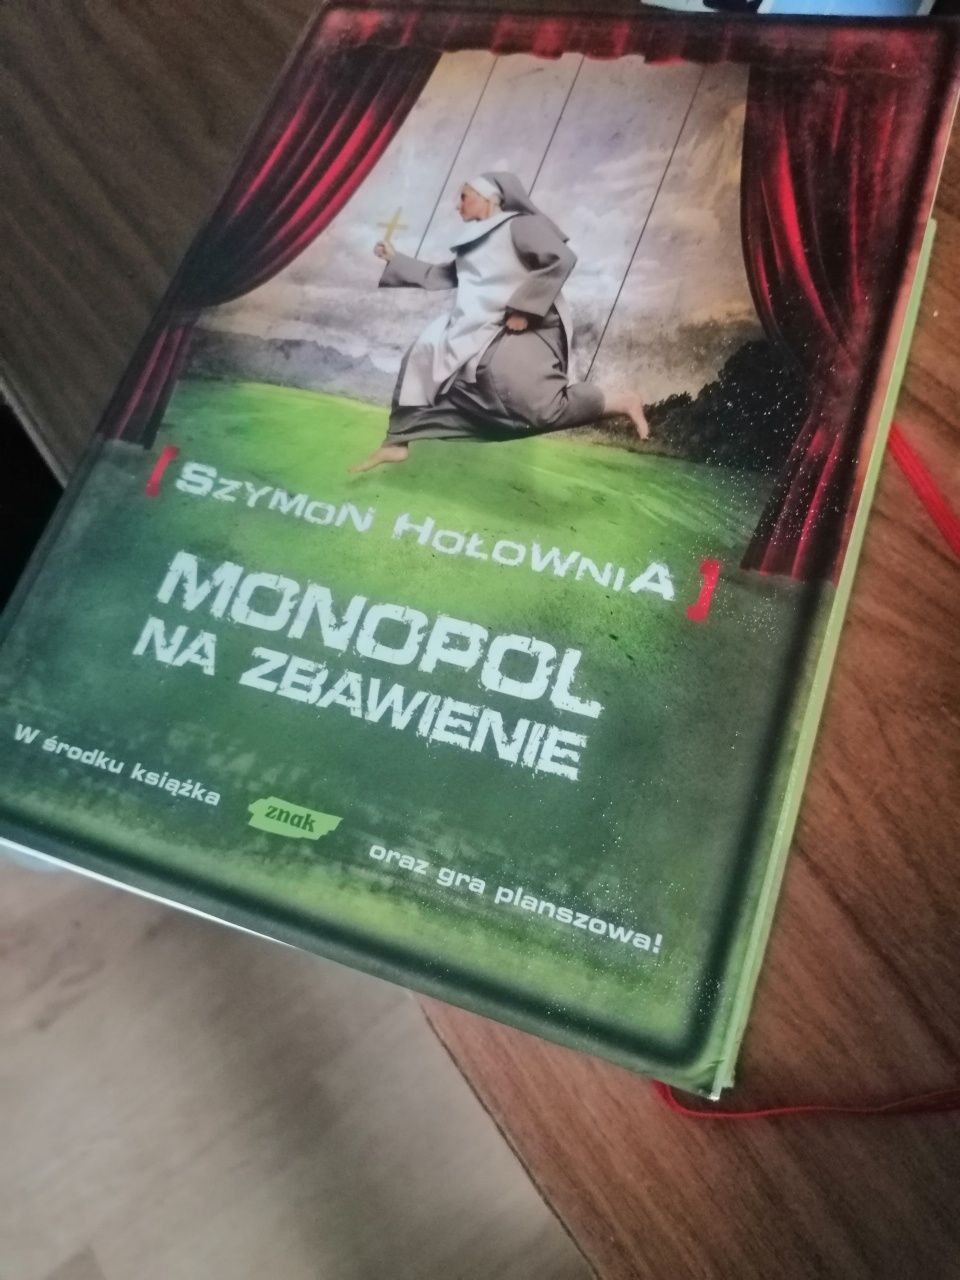 Szymon Hołownia "Monopol na zbawienie" książka z grą planszową.